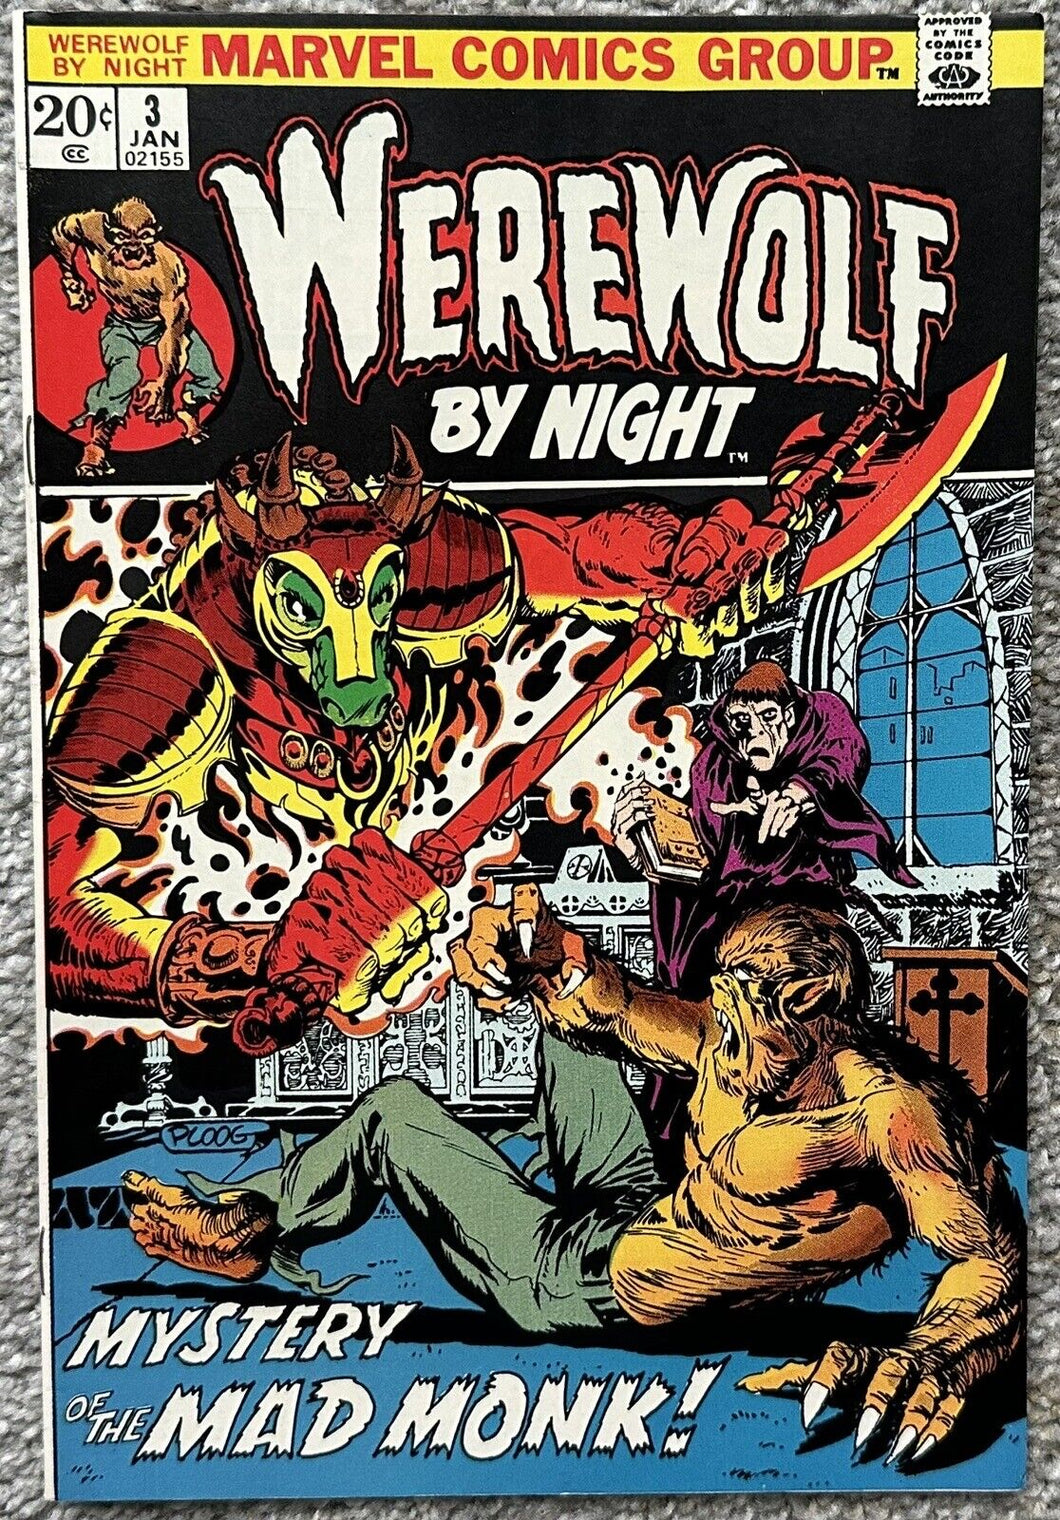 WEREWOLF BY NIGHT #3 (MARVEL,1973)